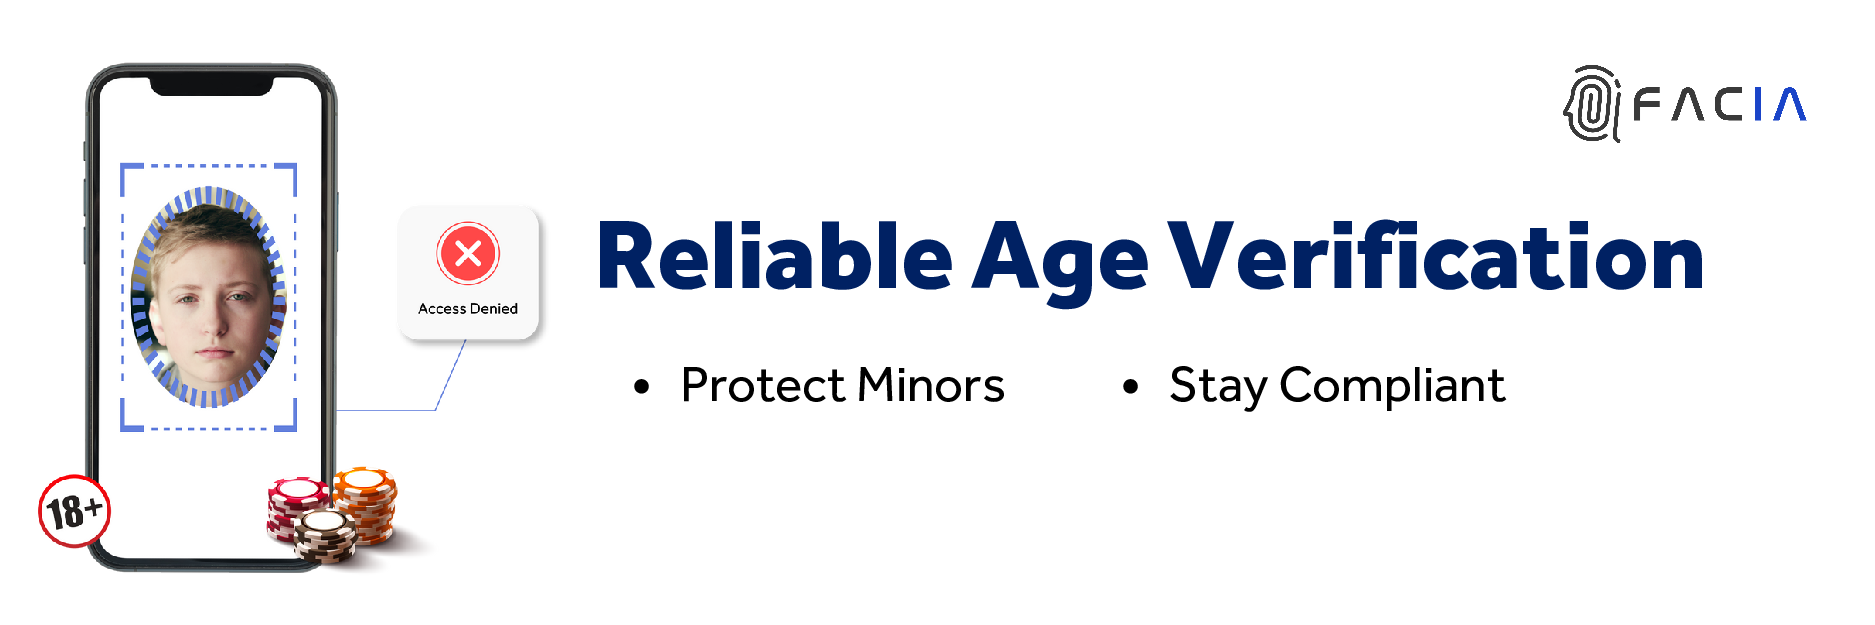 Reliable Age Verification